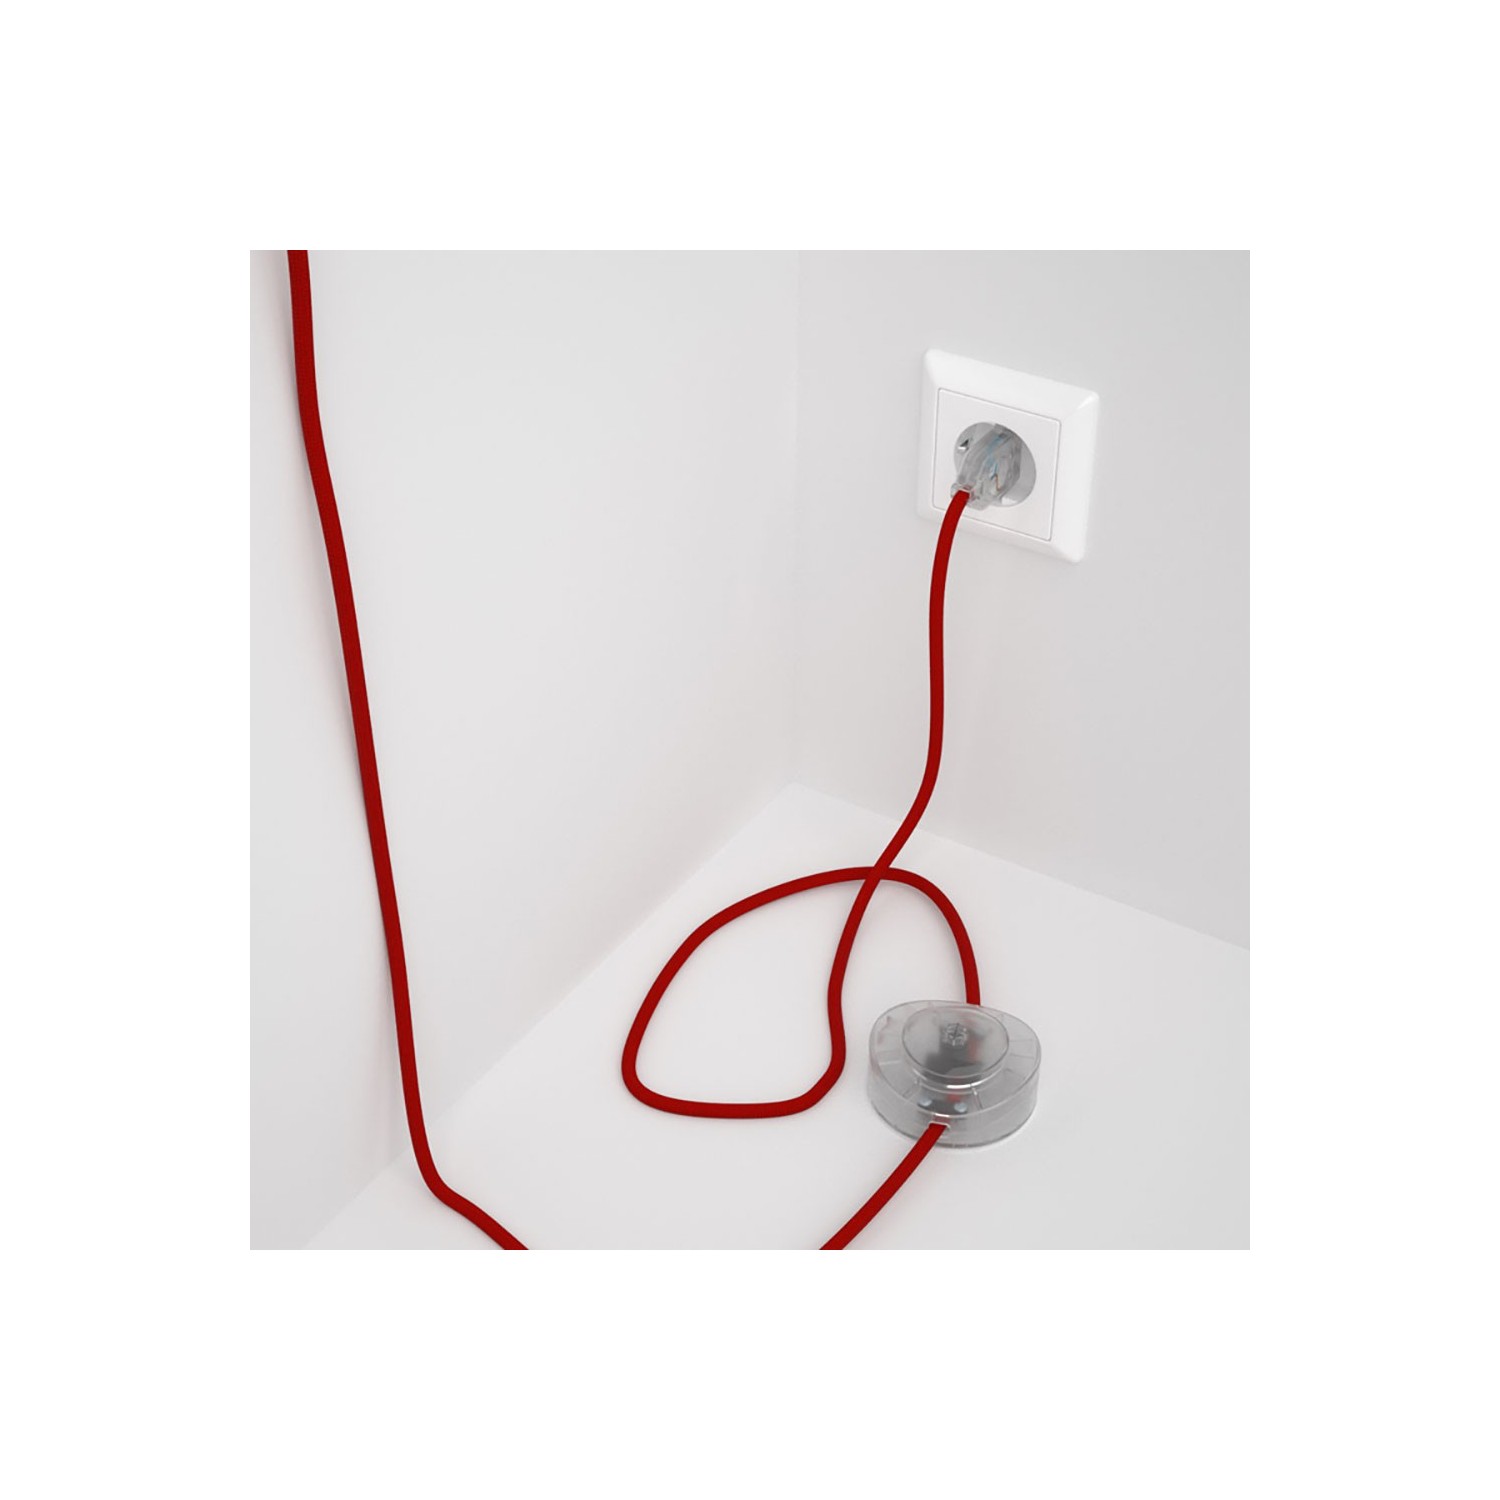 Cordon pour lampadaire, câble RM09 Effet Soie Rouge 3 m. Choisissez la couleur de la fiche et de l'interrupteur!